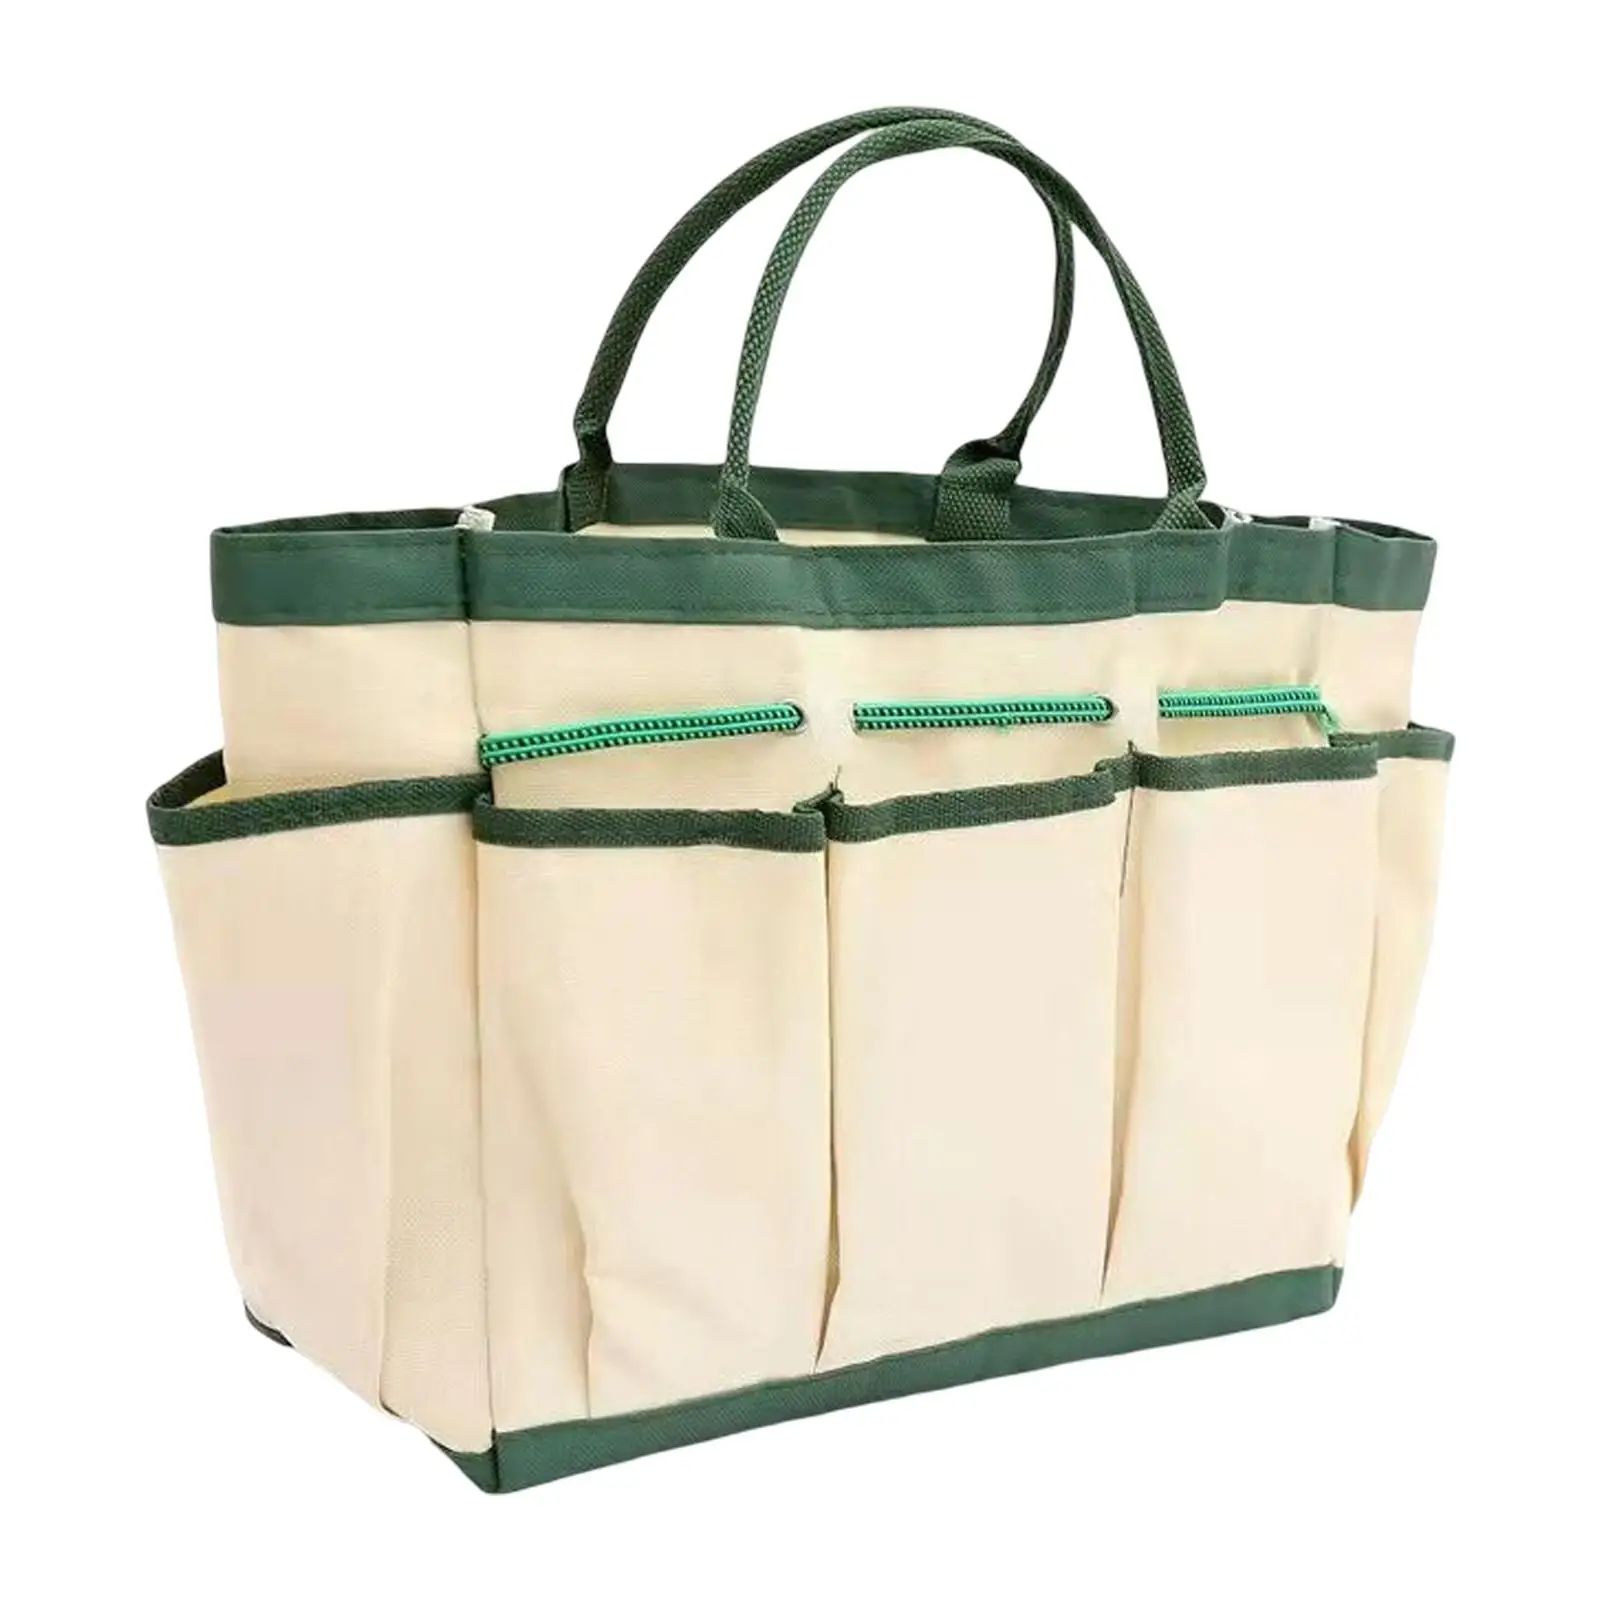 Garden Tool Bag Organizer Pocket Elastic Strap Carrying Gardening Storage Tote for Transplanter Kneeling Pad Aid Kit